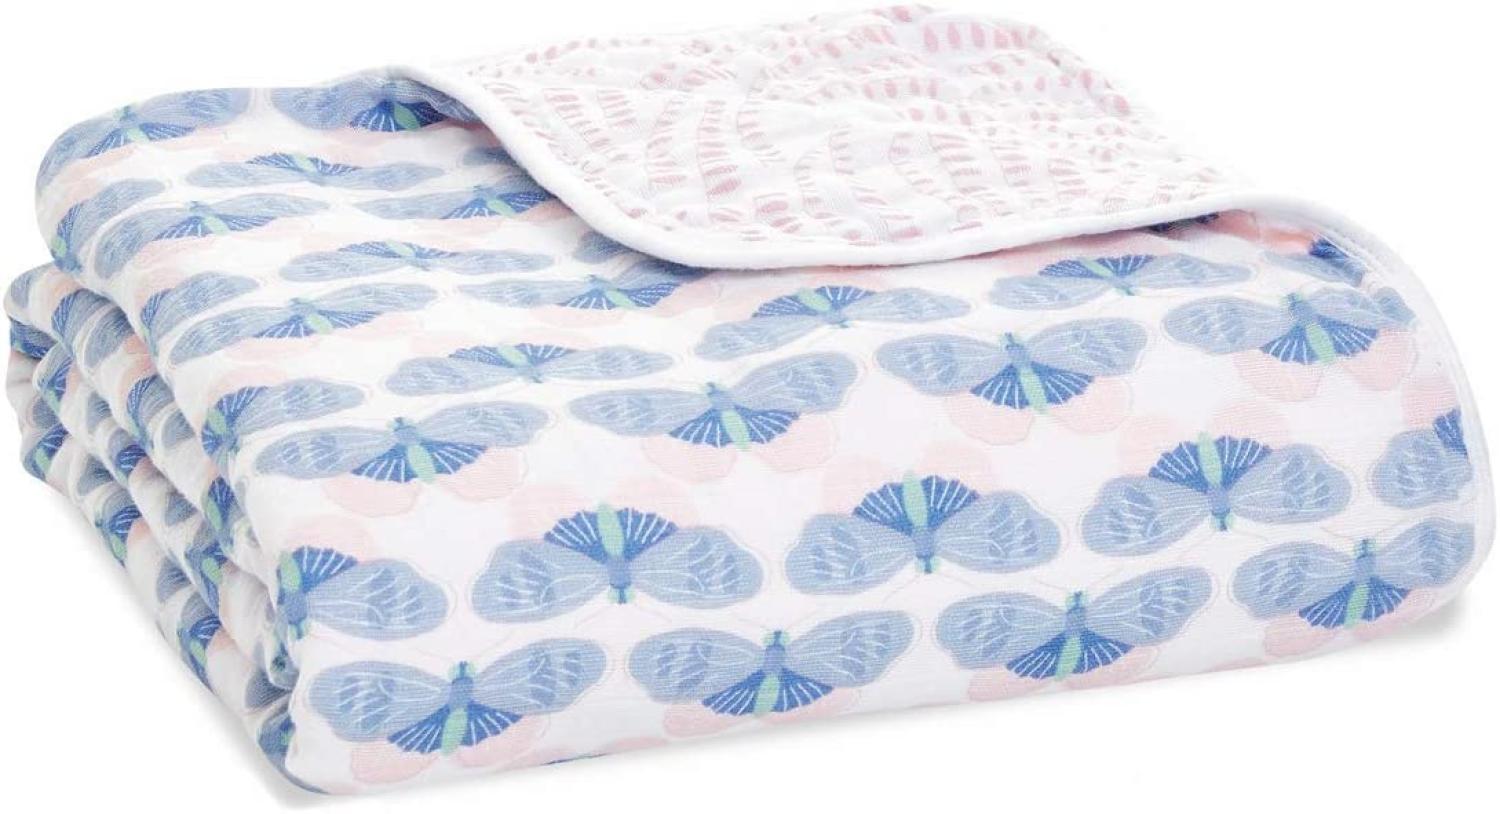 aden + anais Dream Blanket, Weiche und warme Decke für Neugeborene und Kleinkinder, Babydecke für Mädchen & Jungen, 4 Lagen aus 100% Baumwoll-Musselin, 120x120cm, Deco Bild 1